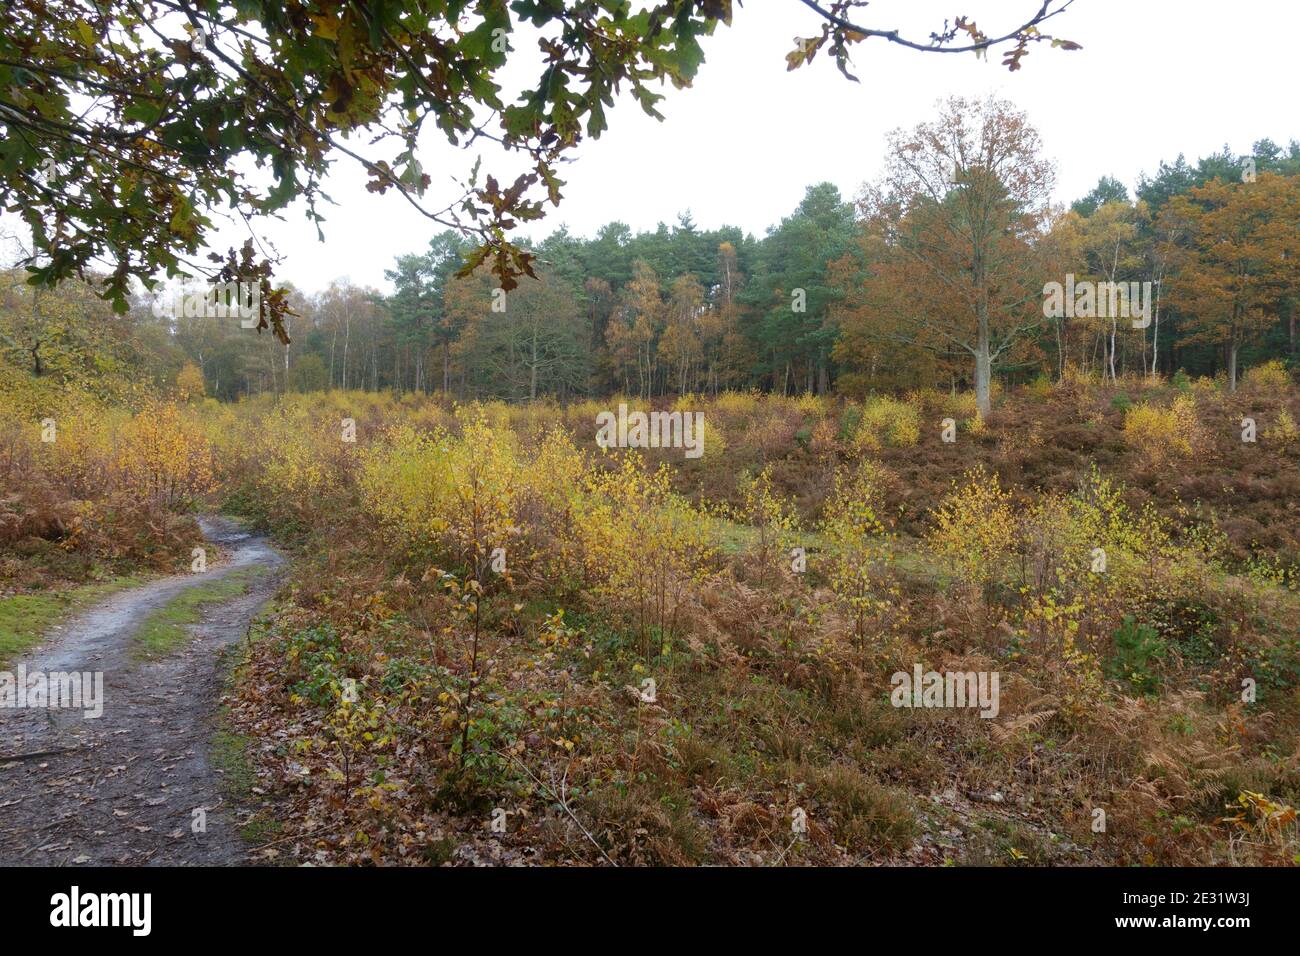 Snelsmore comune in autunno con la brughiera aperta e la betulla d'argento sparsa (Betula pendula), Newbury, Berkshire, novembre Foto Stock